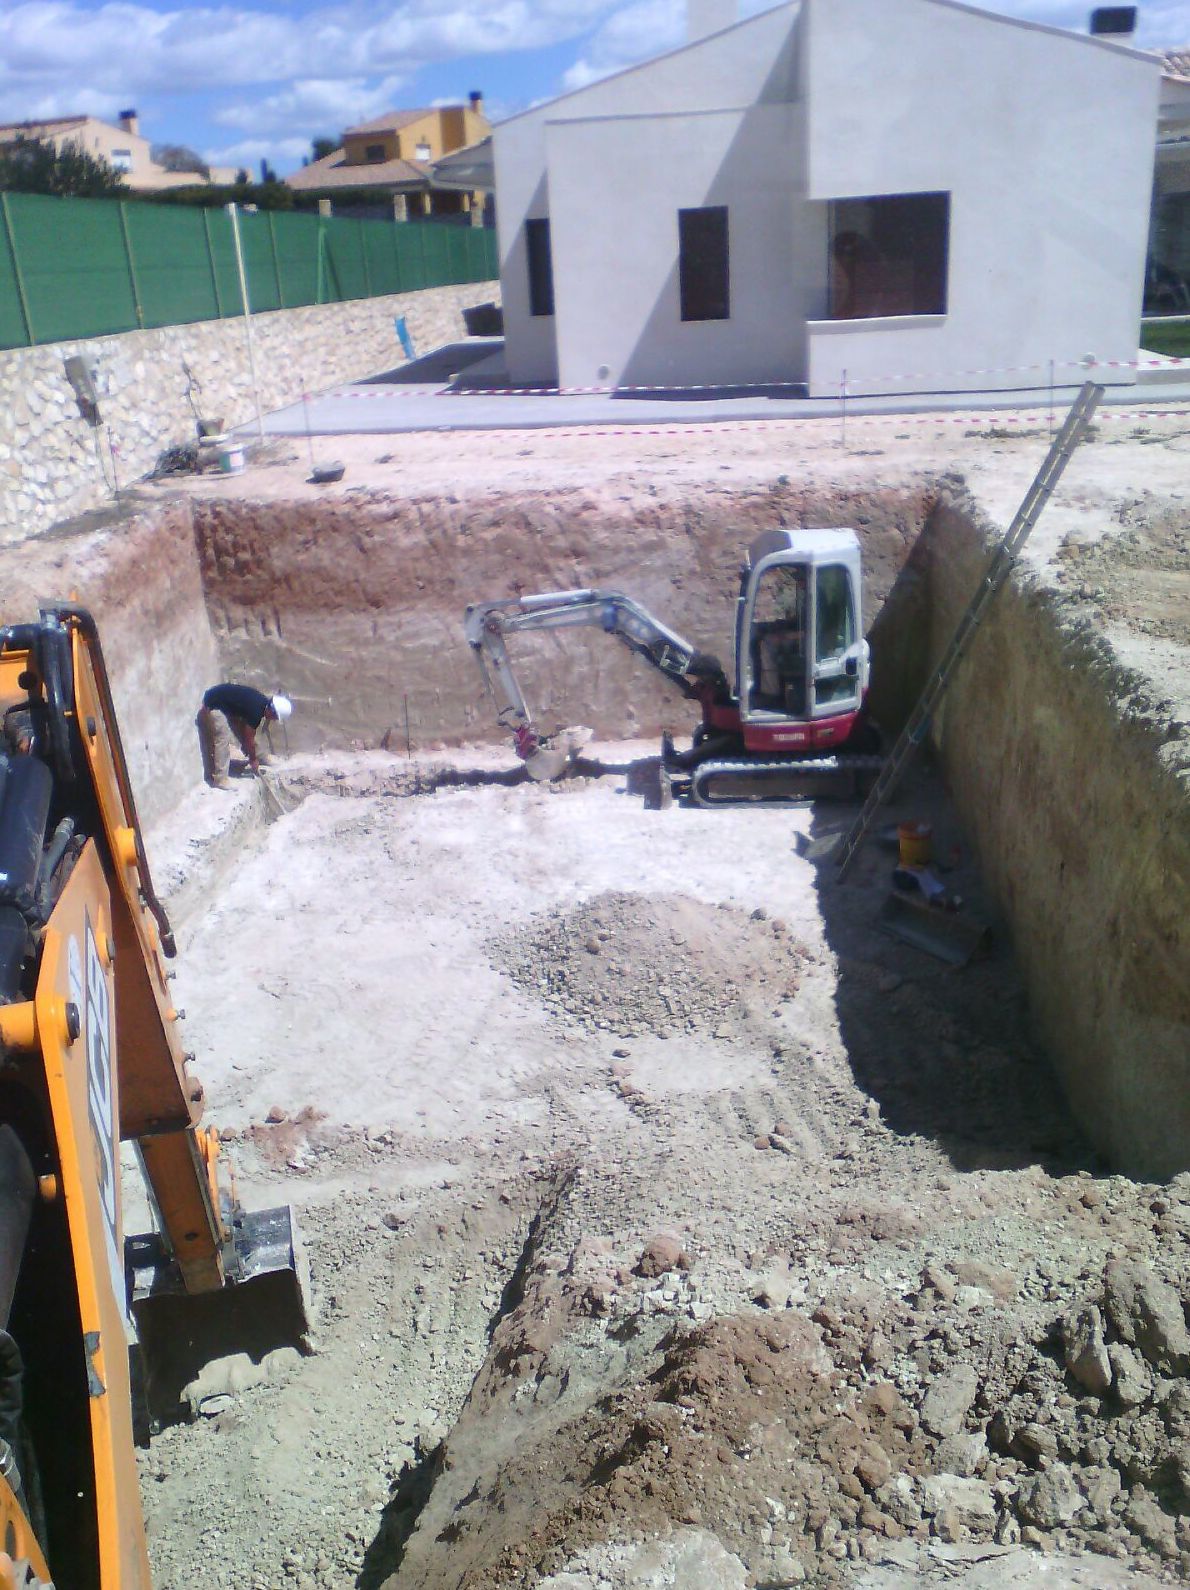 Foto 7 de Excavaciones en Fontanares | Excavaciones Calabuig, S. L.